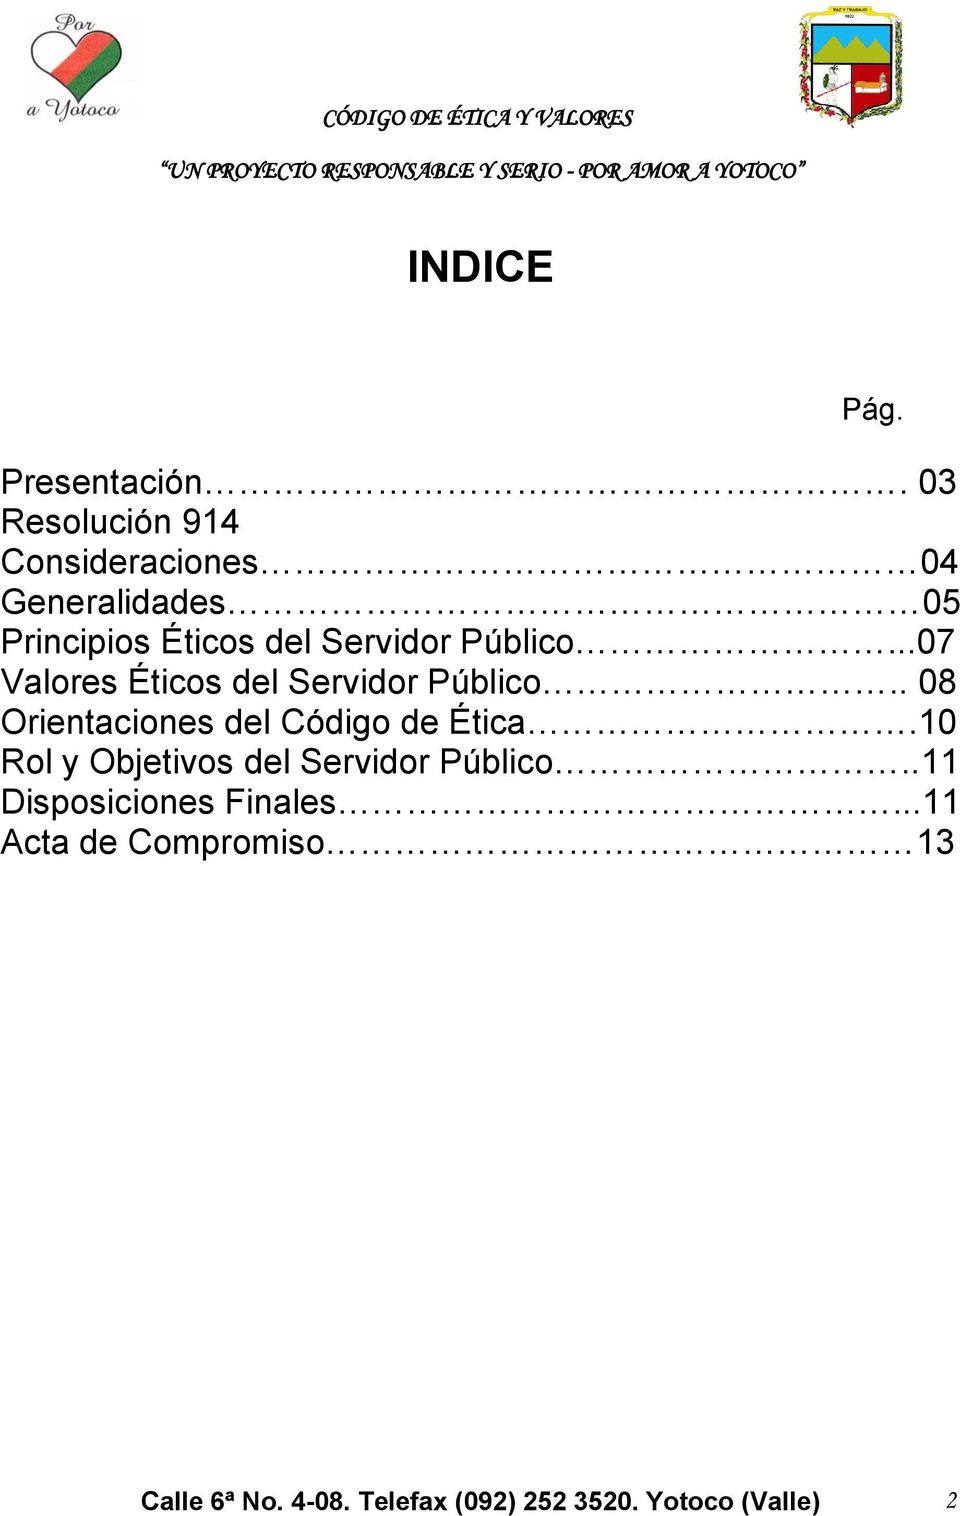 Público...07 Valores Éticos del Servidor Público.. 08 Orientaciones del Código de Ética.